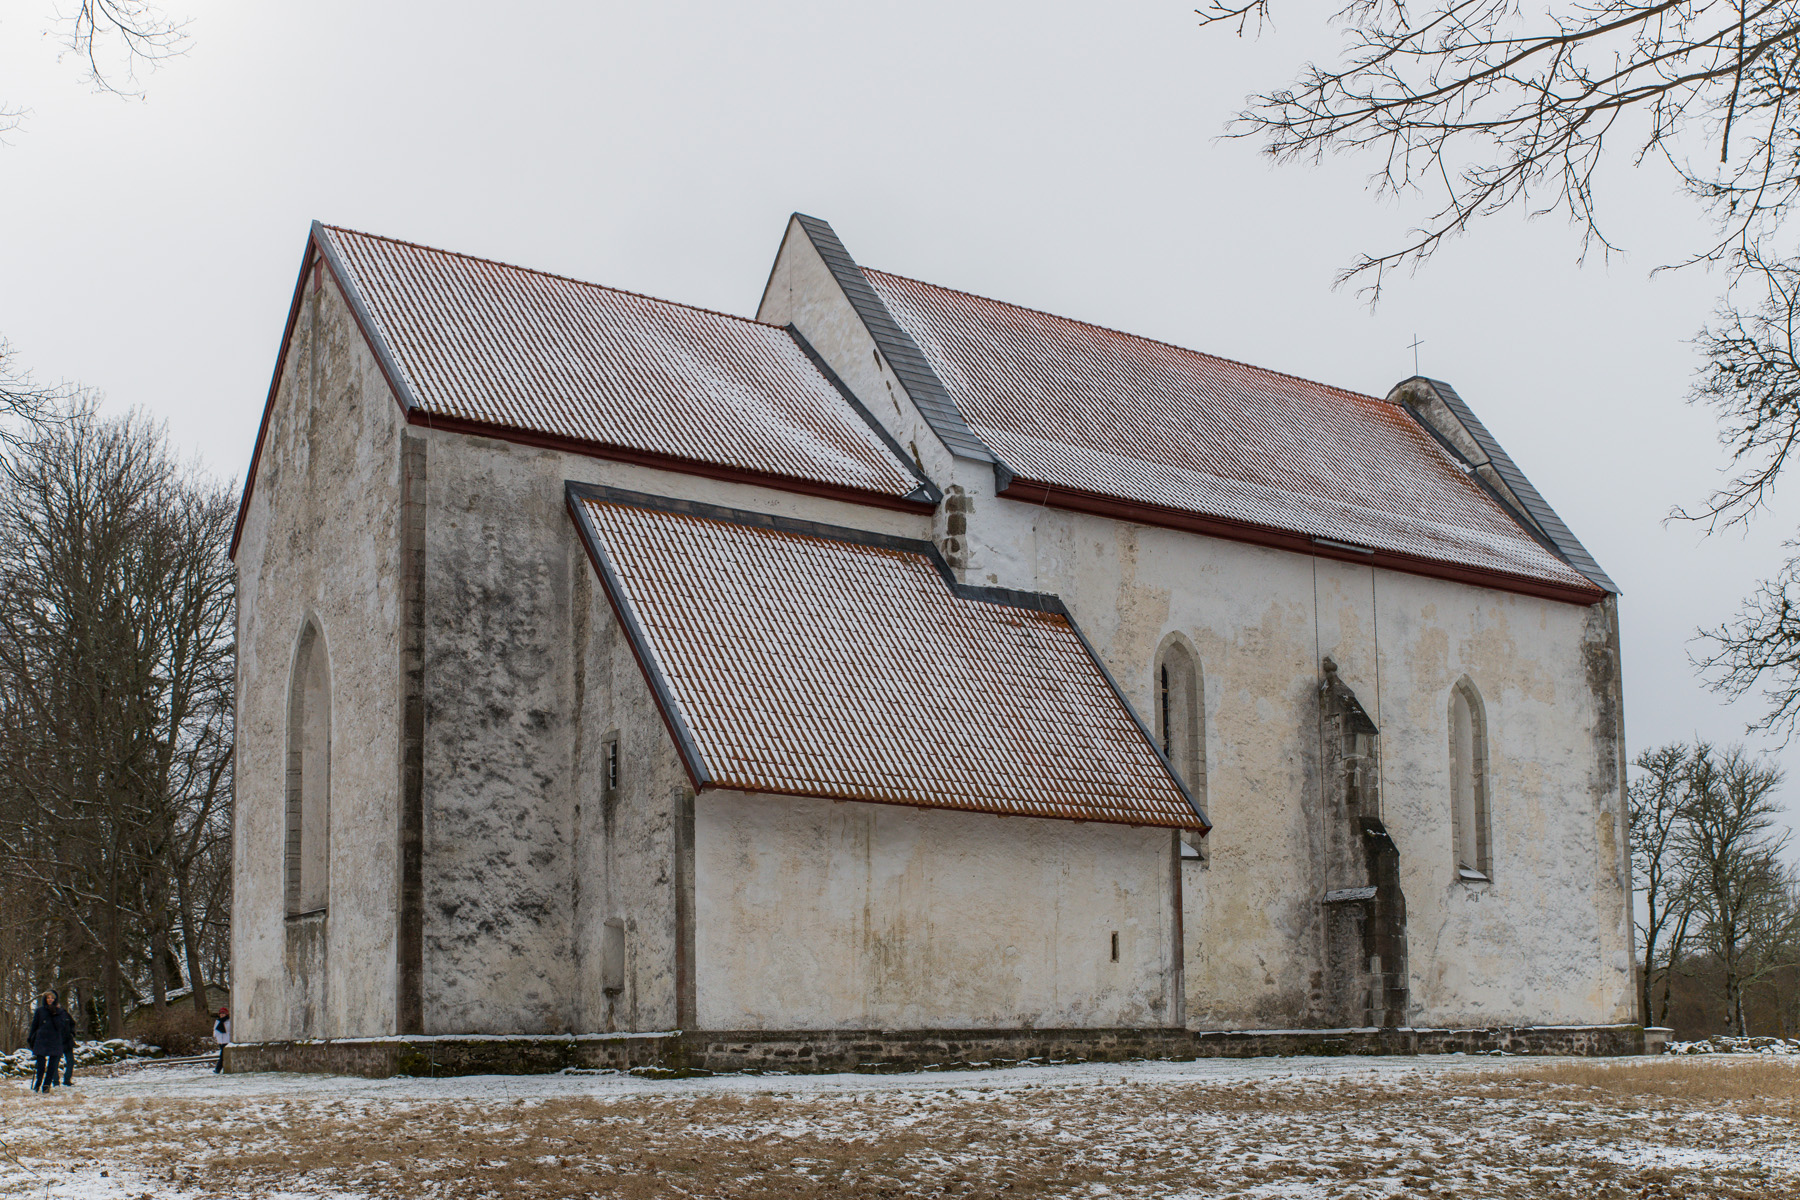 20160319-Saaremaa-343-Karja-kirik.jpg - 18.-20. märts 2016. Saaremaa ringreis. Karja kirik